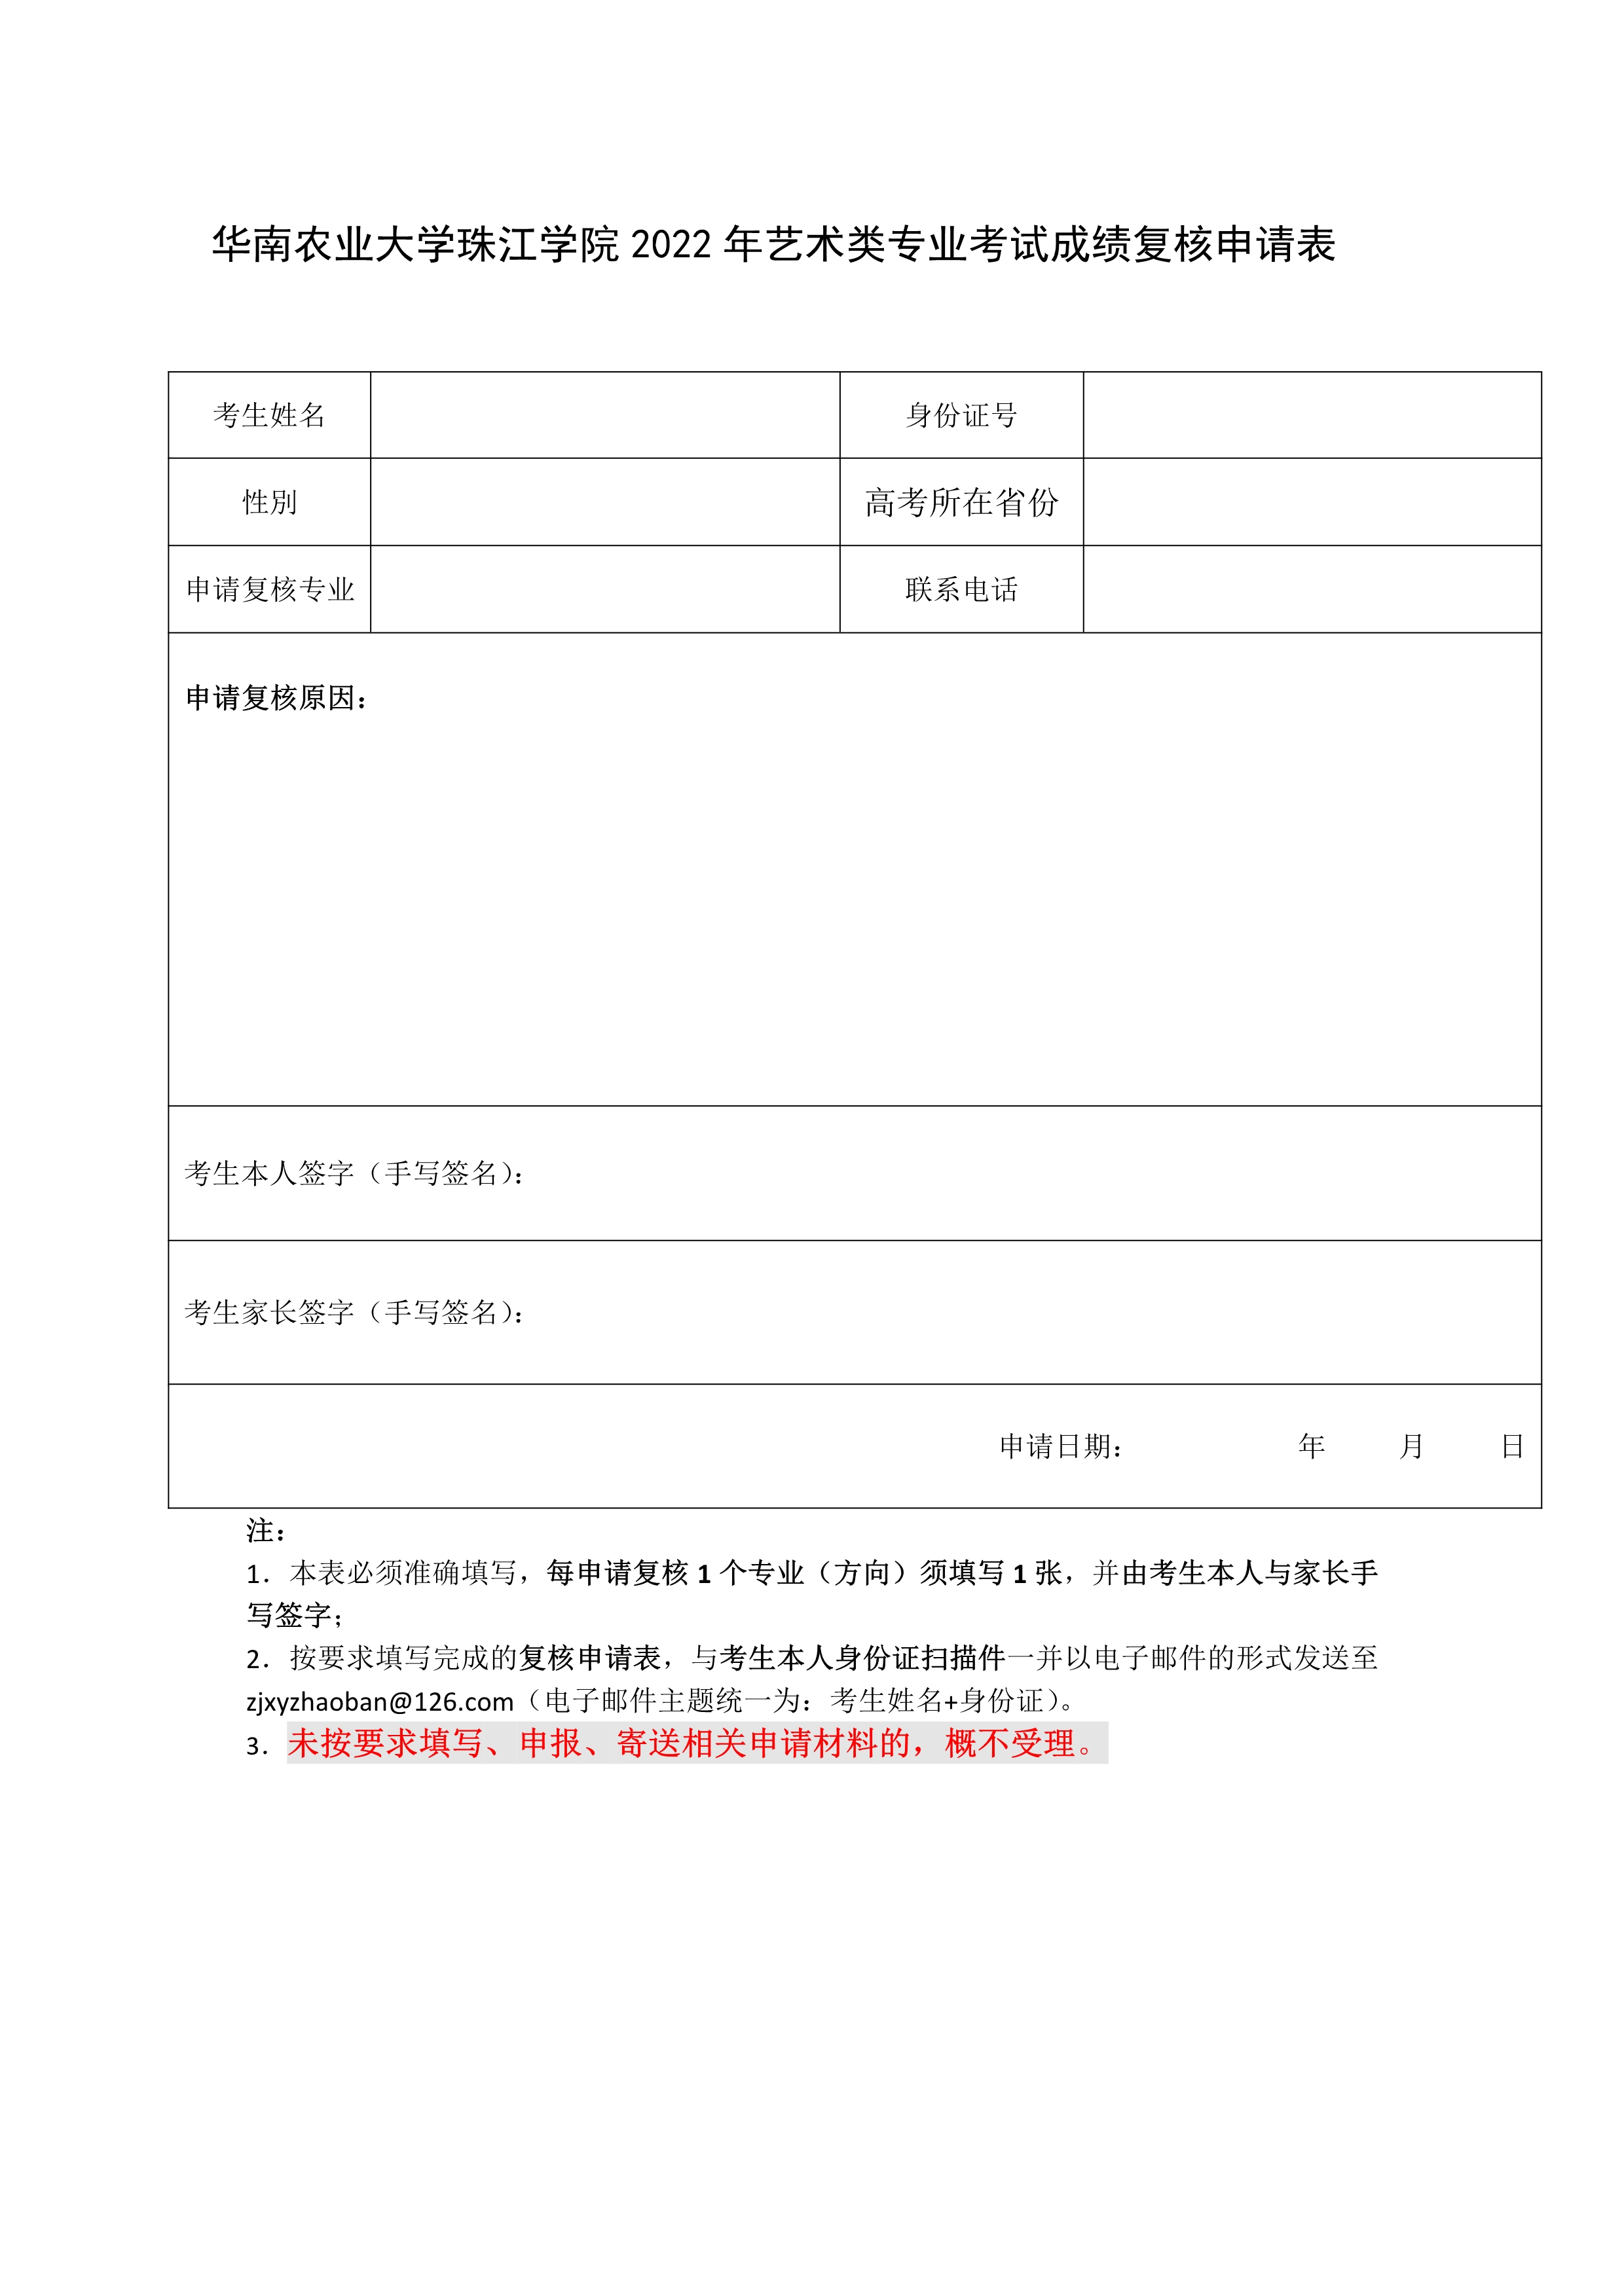 华南农业大学珠江学院校考成绩复核申请表(2)_1.jpg